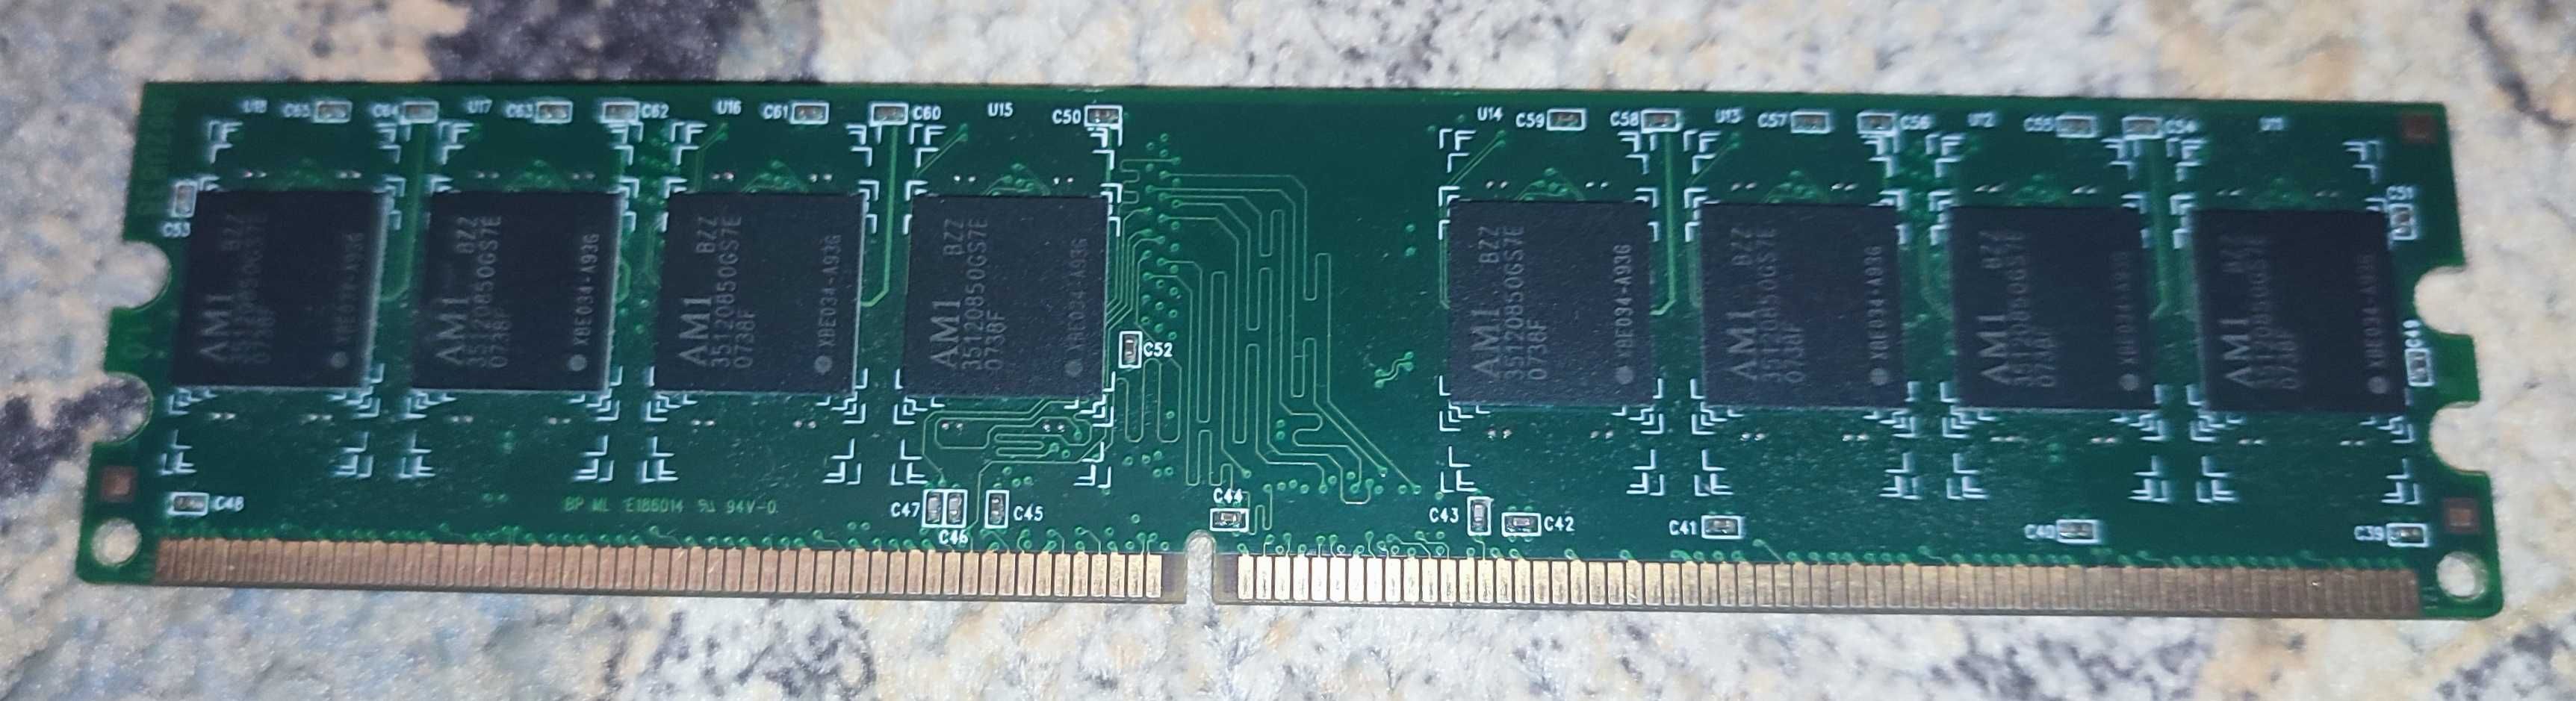 Оперативна память DDR2 UNB PC2-5200 1Gb